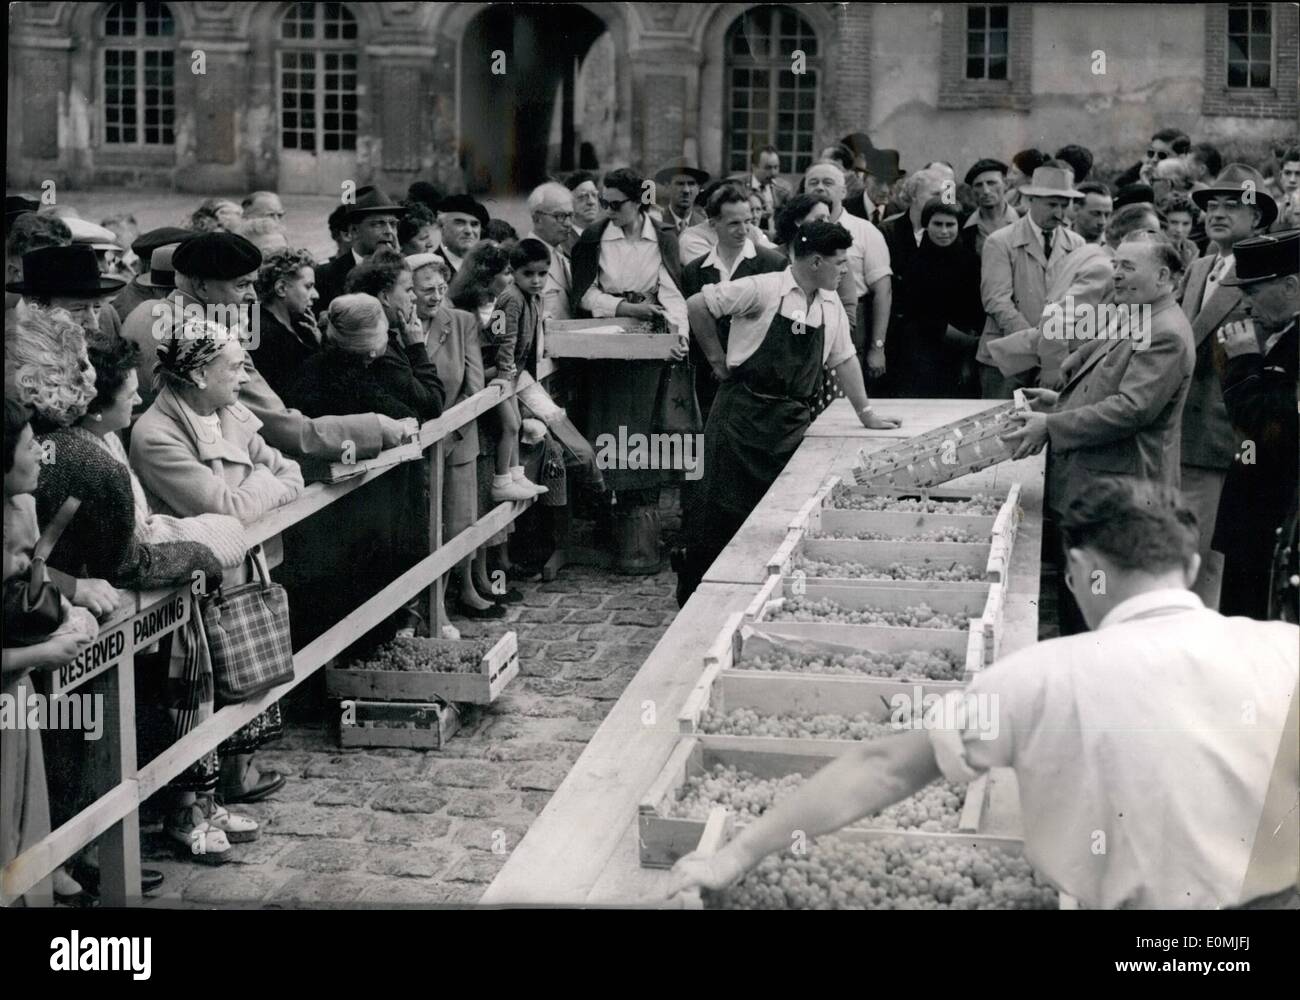 Sett. 09, 1955 - Fontainebleau uva venduta all'asta: una scena della vendita all'asta del Fonta in Bleaue uve coltivate nella famosa ''Re vine Yard''. Questo tipo di vendita è che si tiene ogni anno nel mese di settembre. Foto Stock